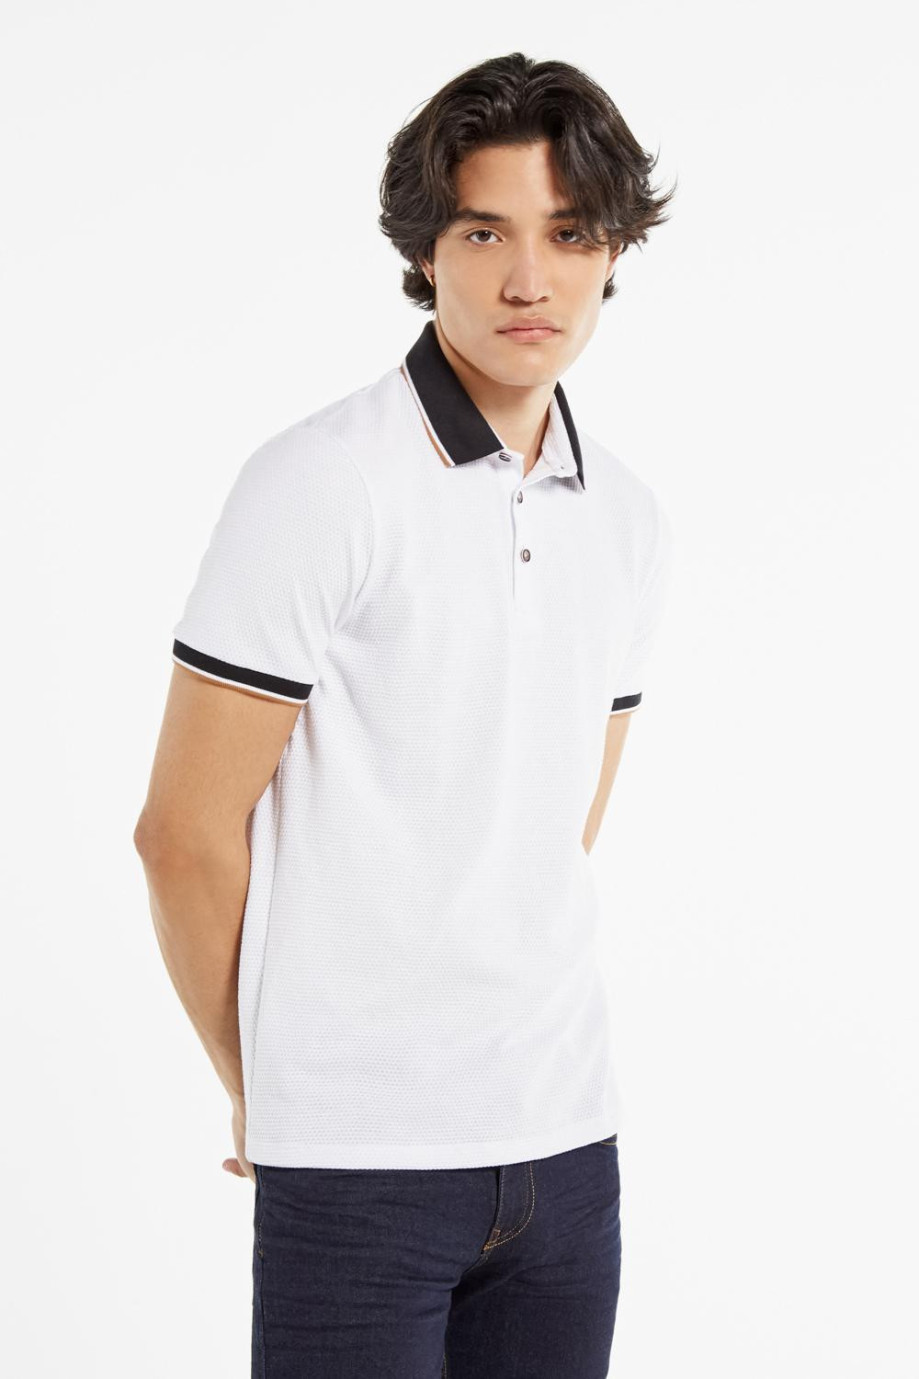 Camiseta blanca polo con cuello y puños tejidos en contraste